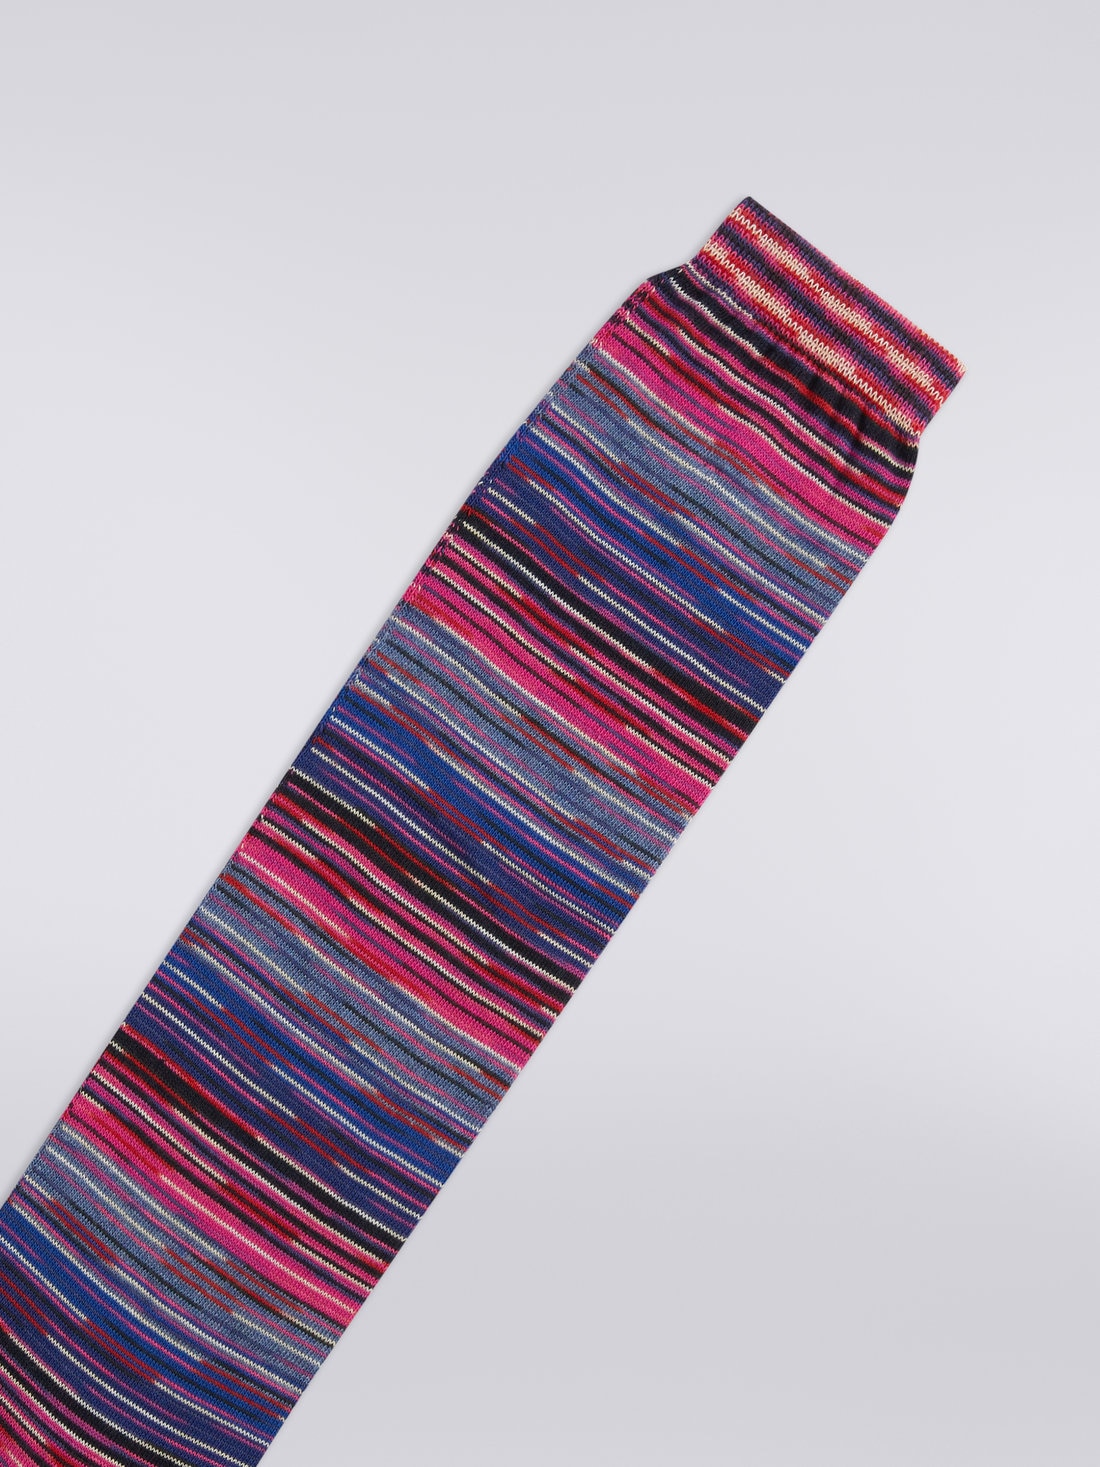 Slub cotton blend socks, Multicoloured  - LS23WS3LBV00ENSM67R - 2